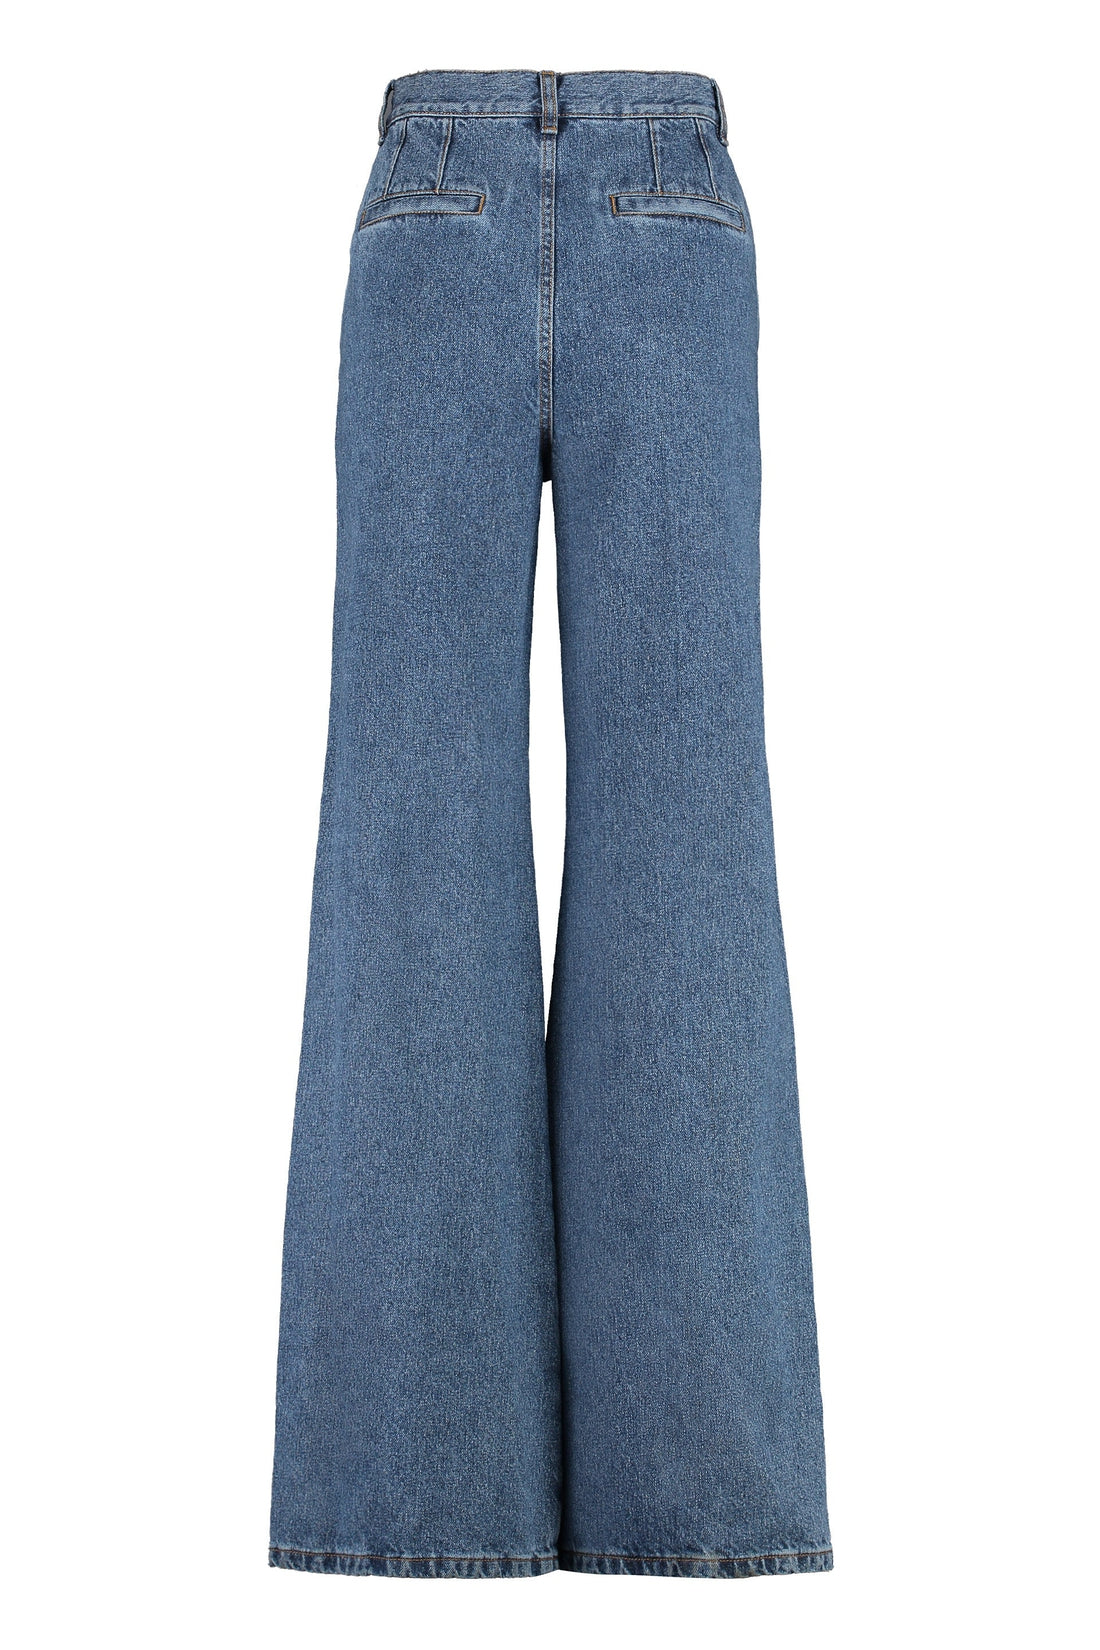 Chloé-OUTLET-SALE-High-waist wide-leg jeans-ARCHIVIST